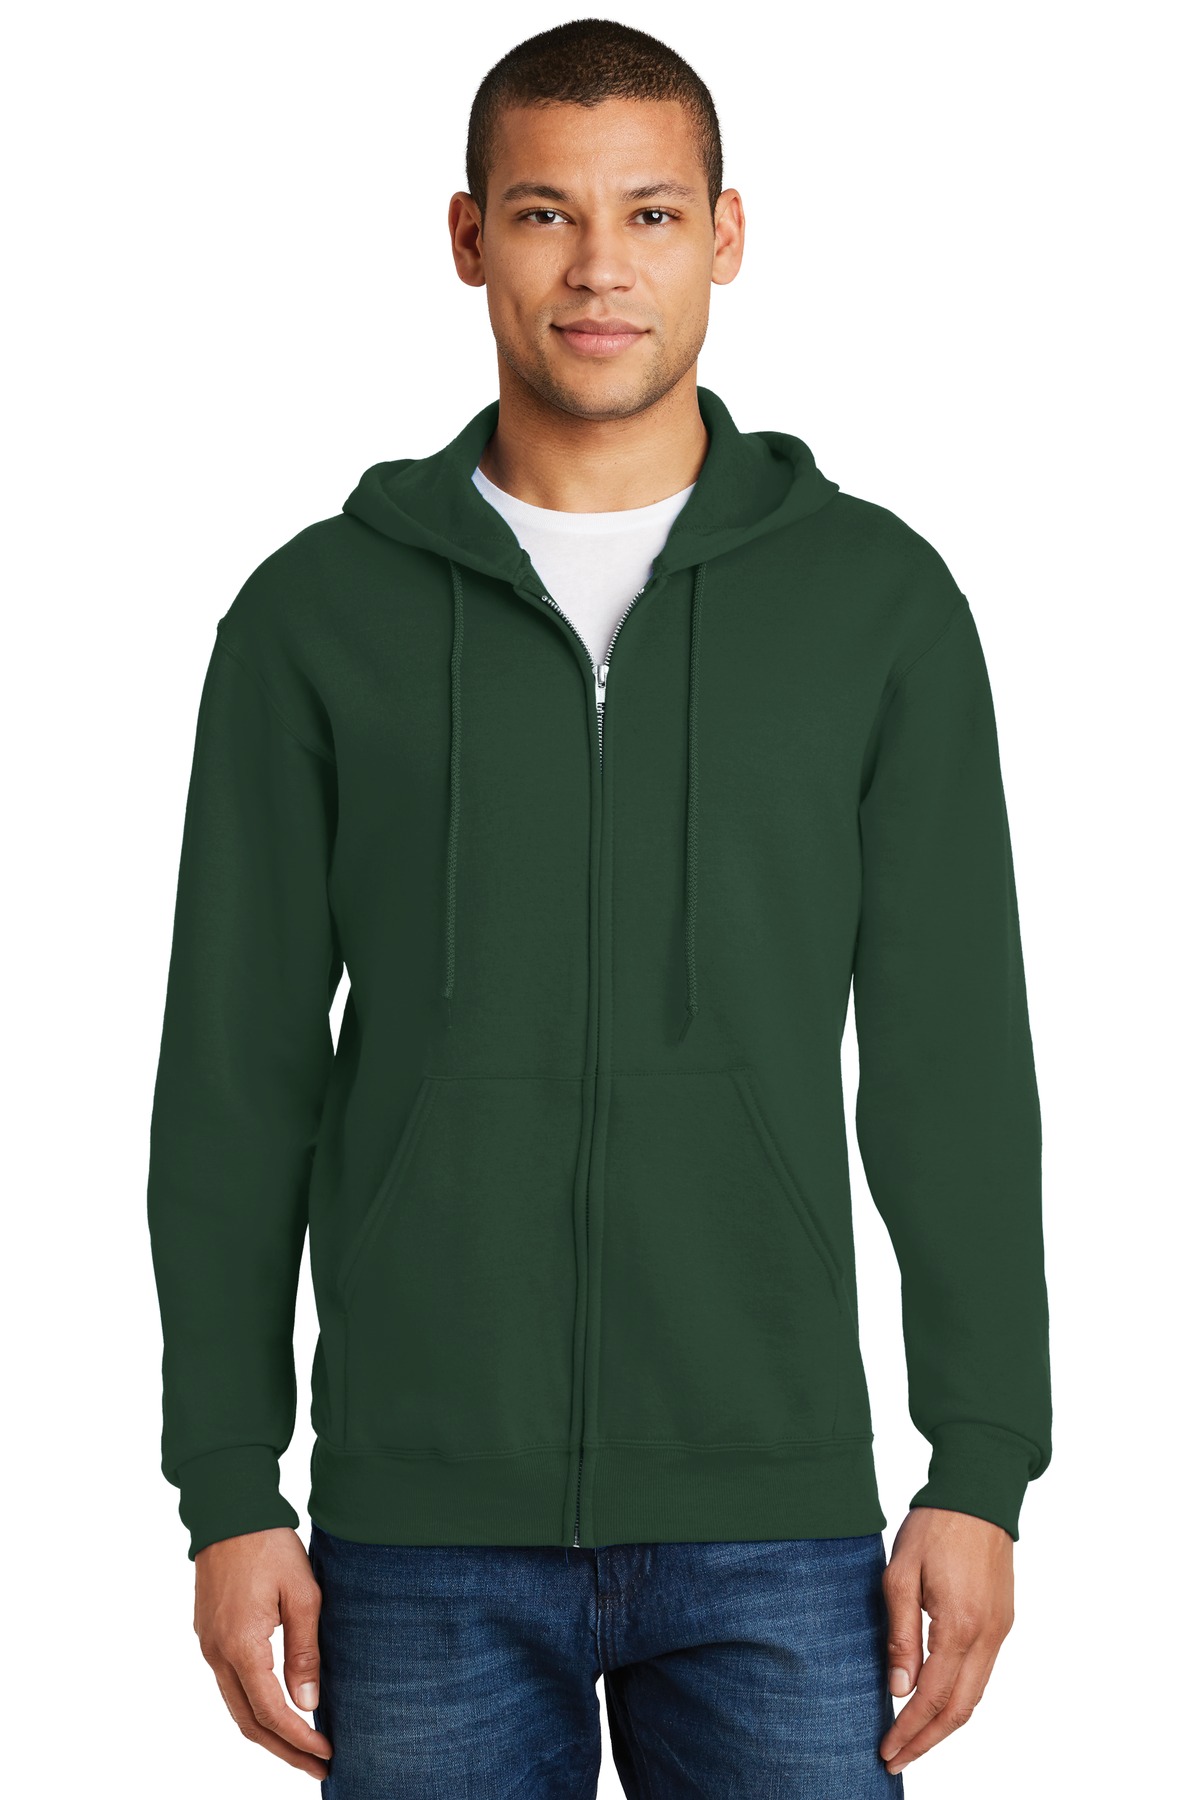 JERZEES - NuBlend Full-Zip Hooded Sweatshirt. 993M